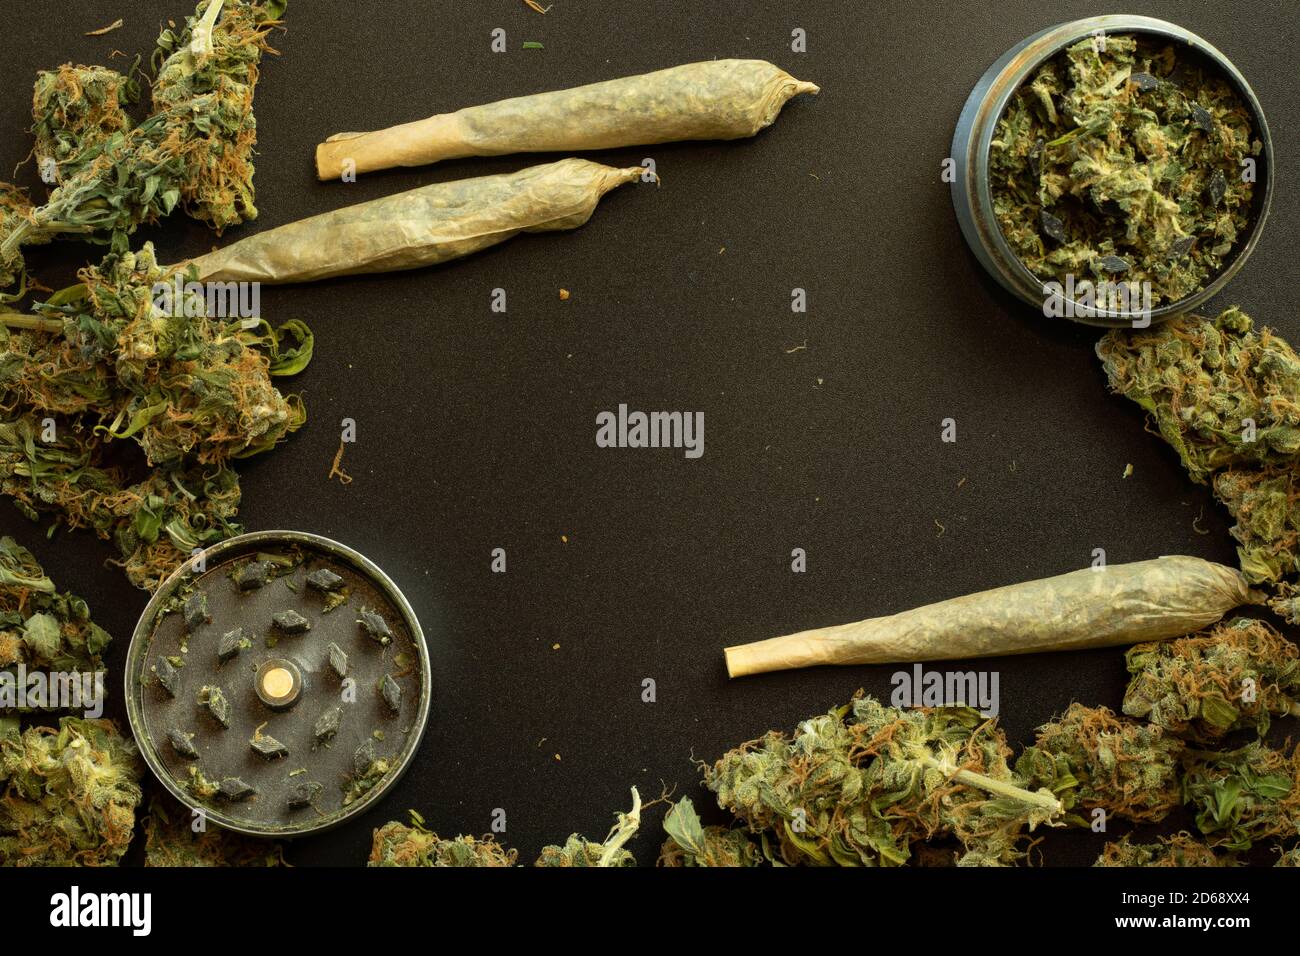 Marijuana con accessori per fumare su sfondo copy space. Concetto di disegno di cannabis Foto Stock